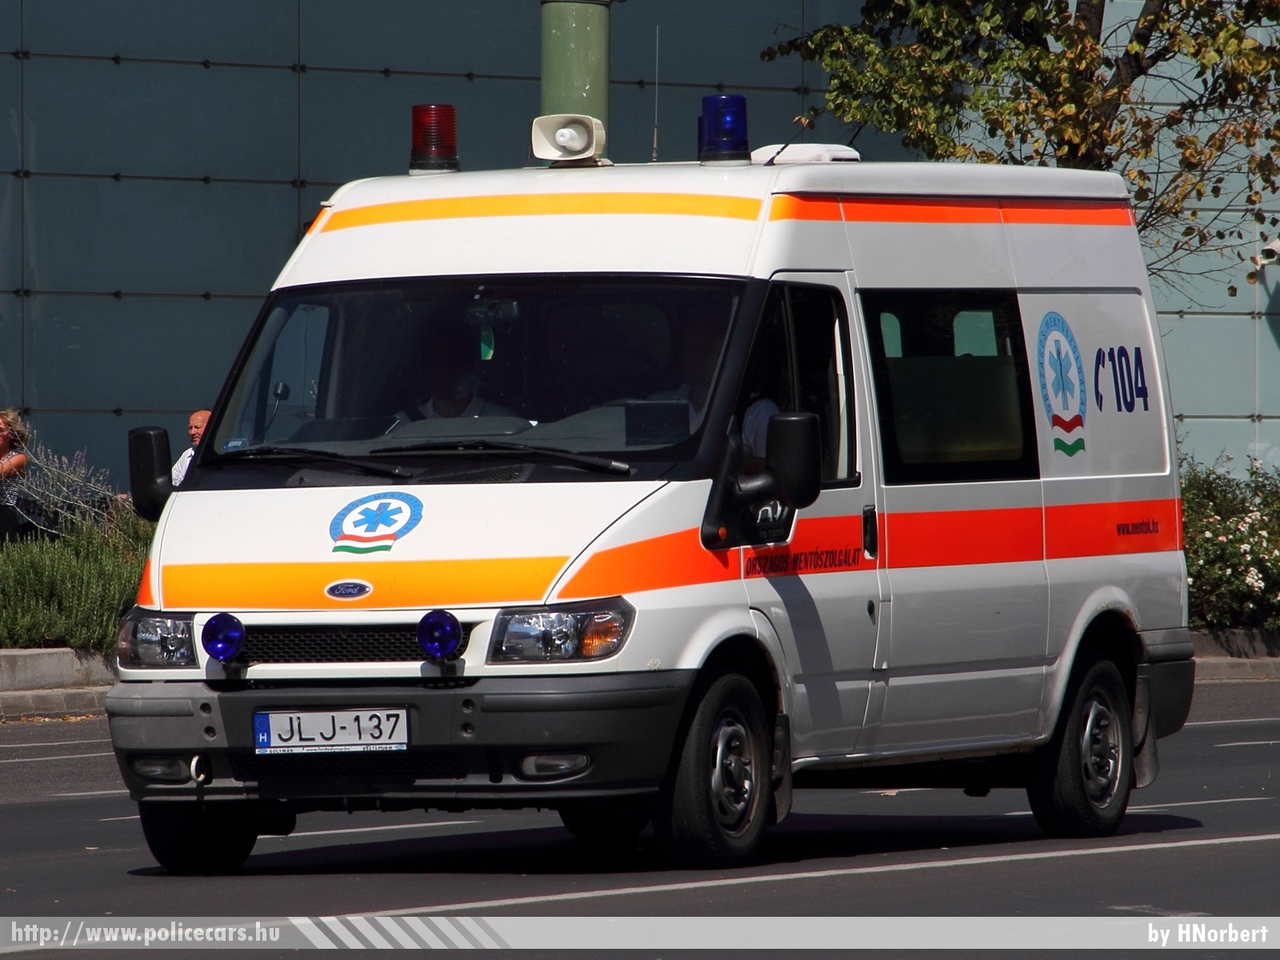 Ford Transit, Országos Mentõszolgálat, fotó: HNorbert
Keywords: magyar Magyarország mentő mentőautó OMSZ Hungary hungarian ambulance JLJ-137